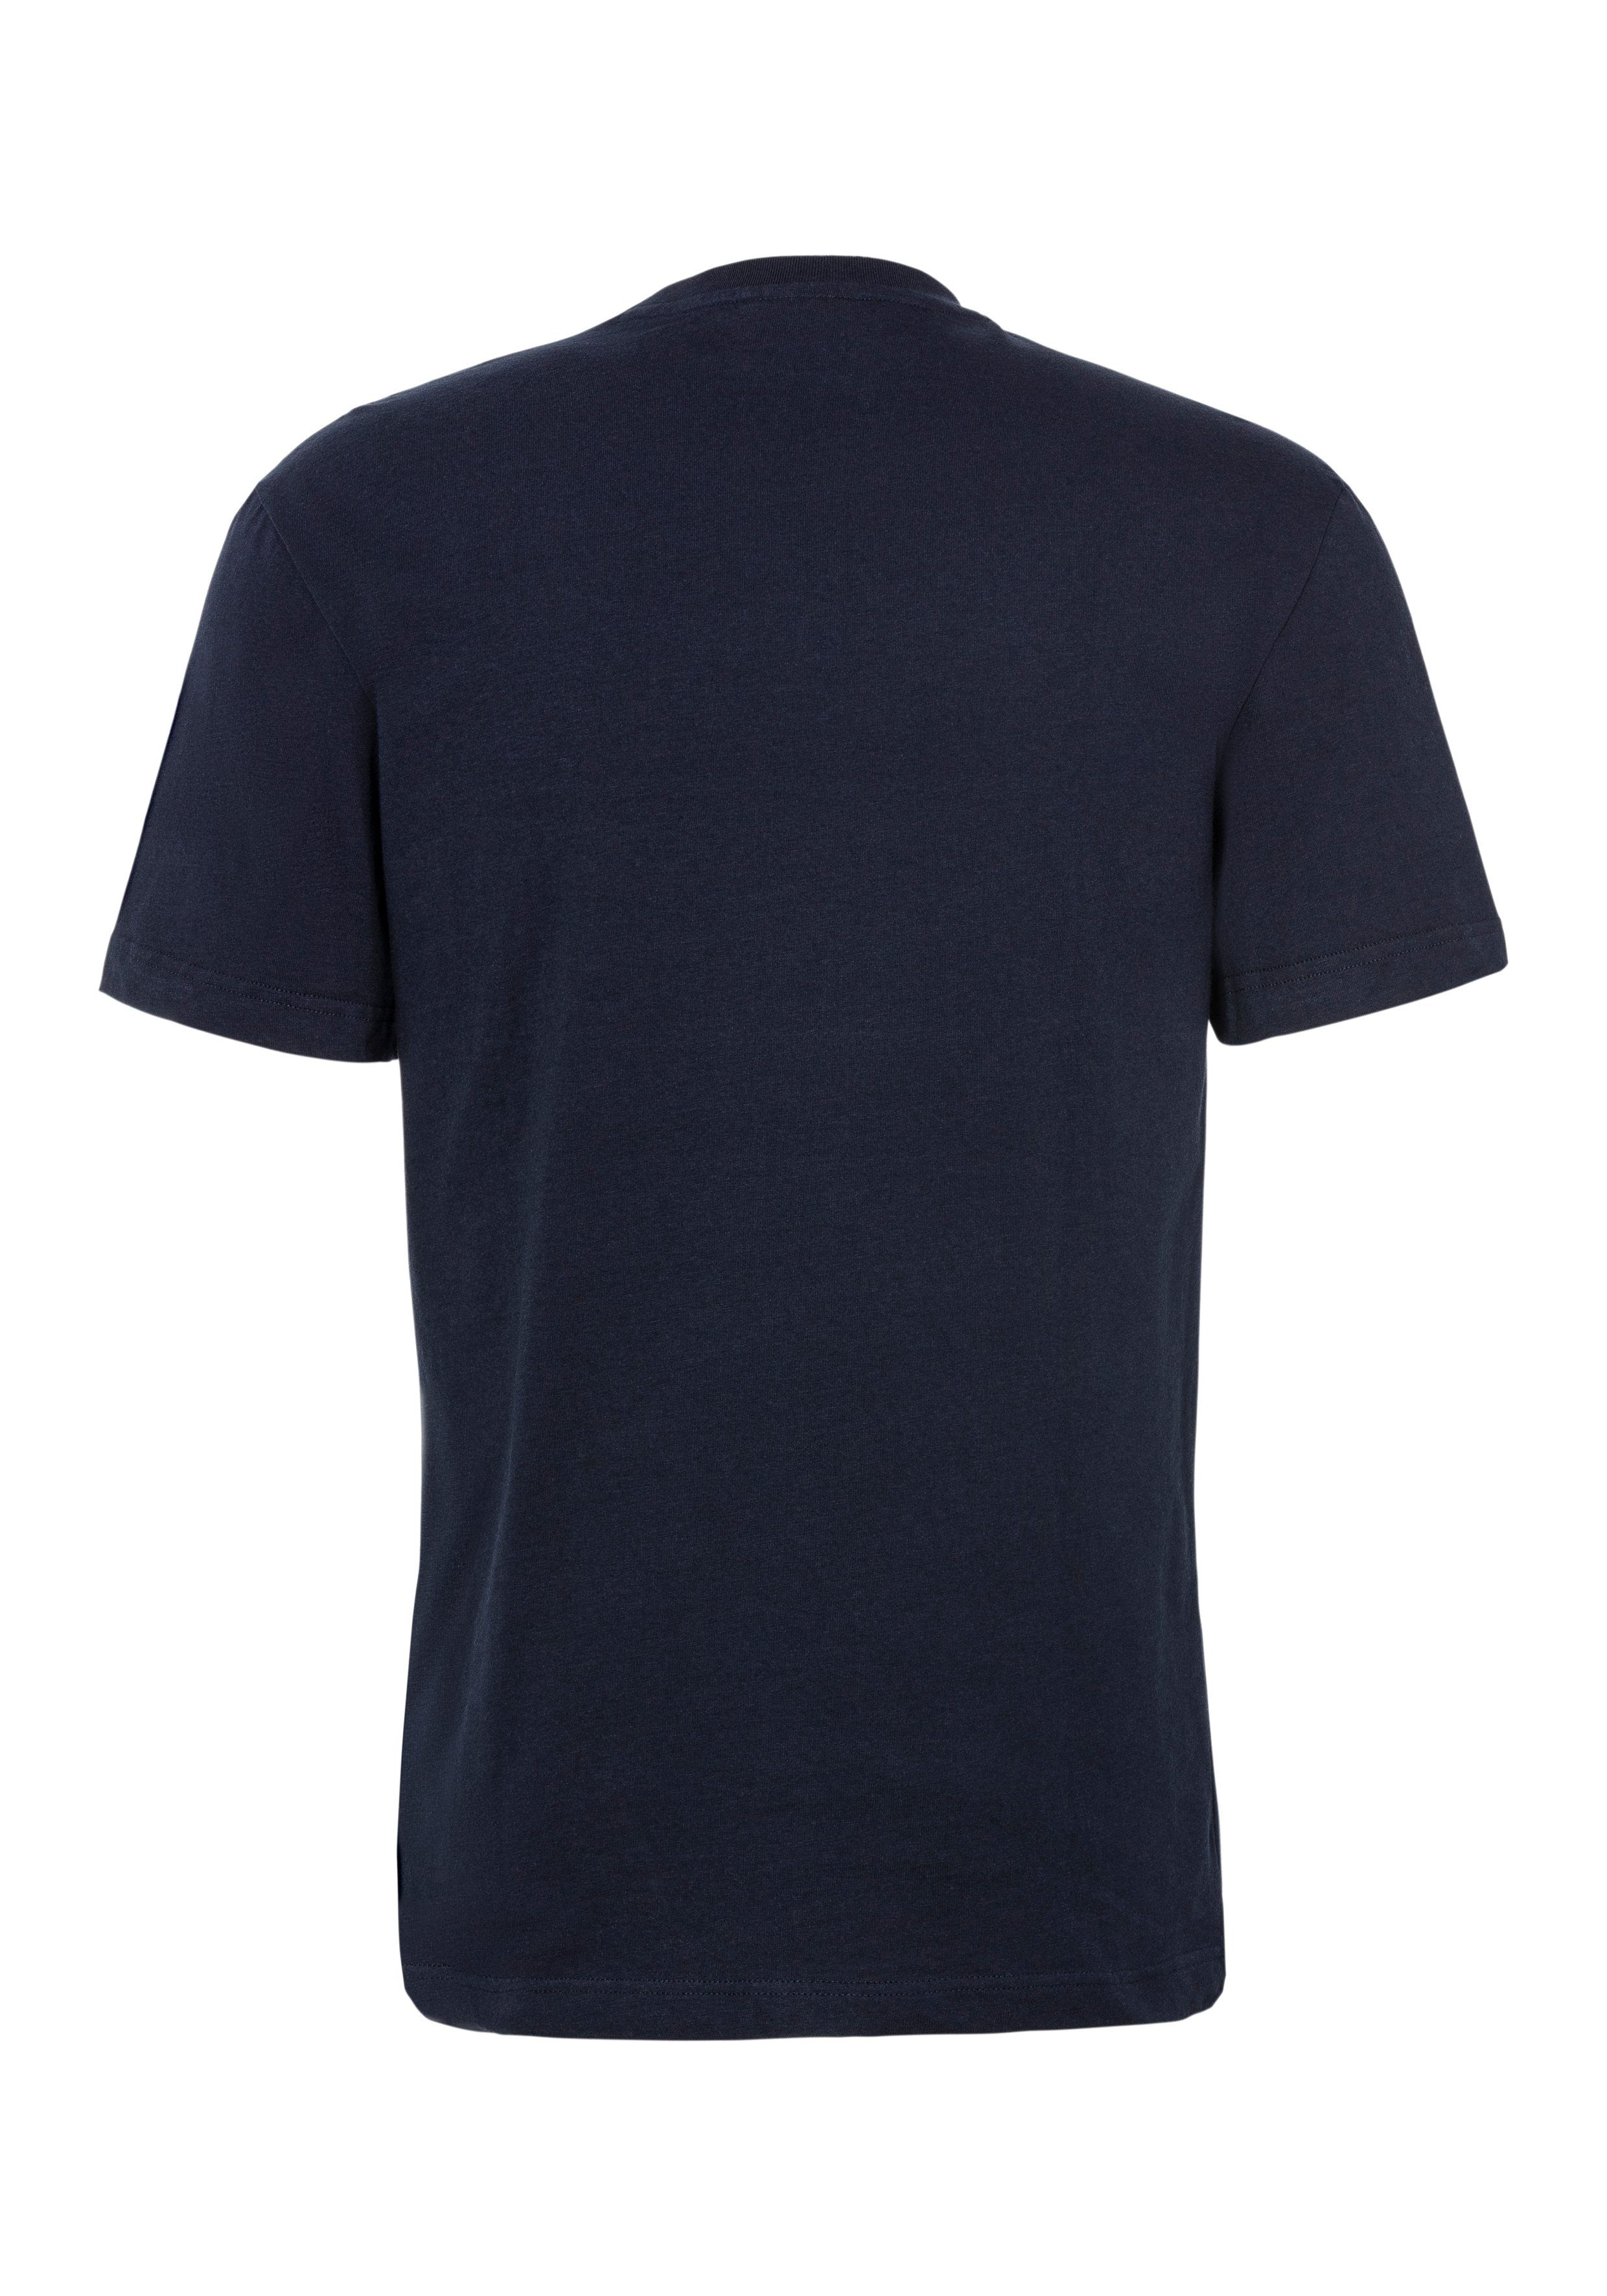 Lacoste T-Shirt SEQUOIA/ABYSM Brust mit Print großem auf T-SHIRT der